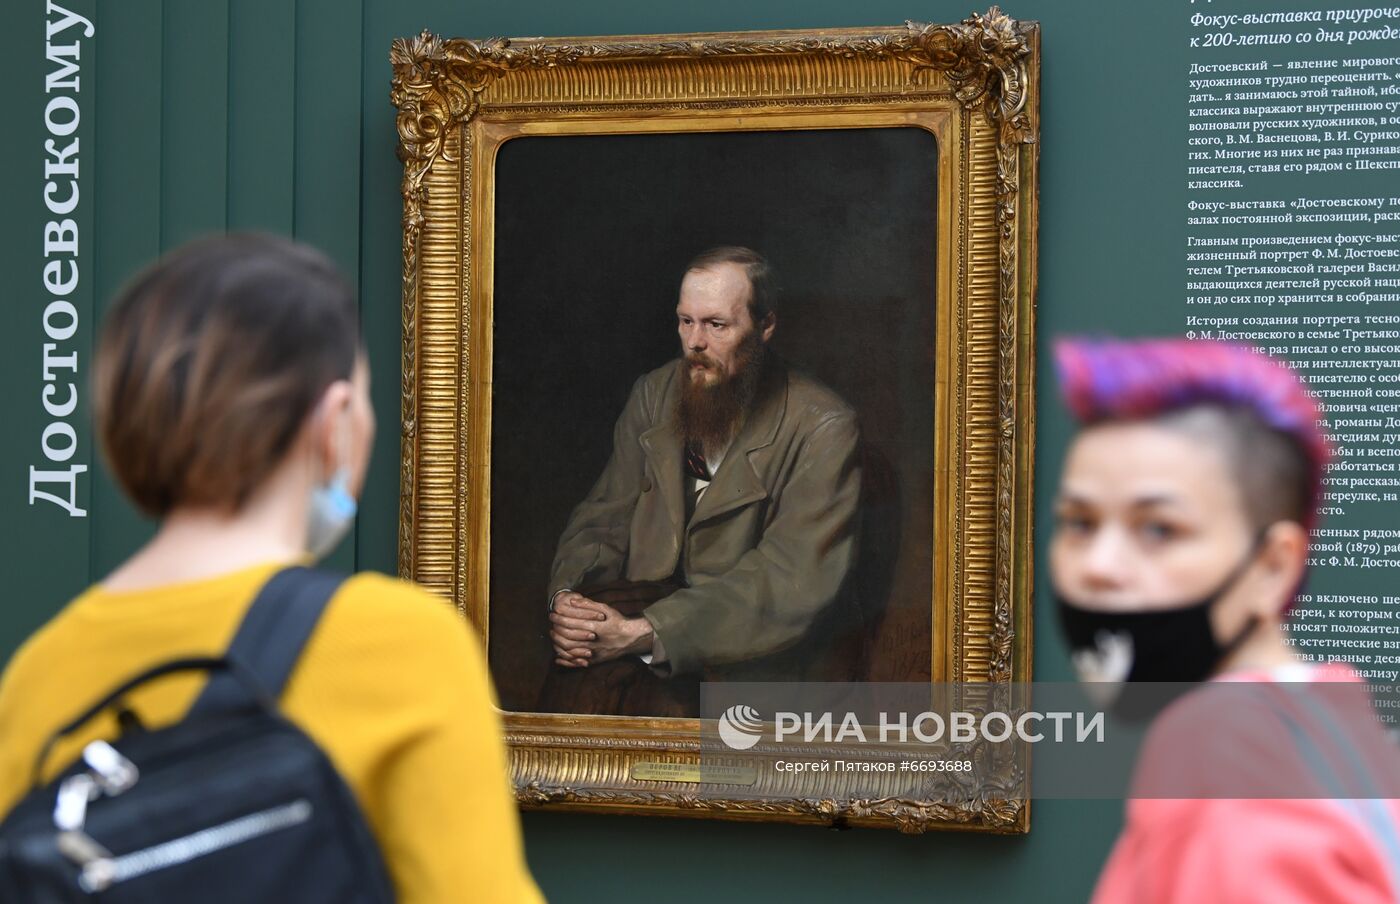 Выставка "Достоевскому посвящается" в Третьяковской галерее